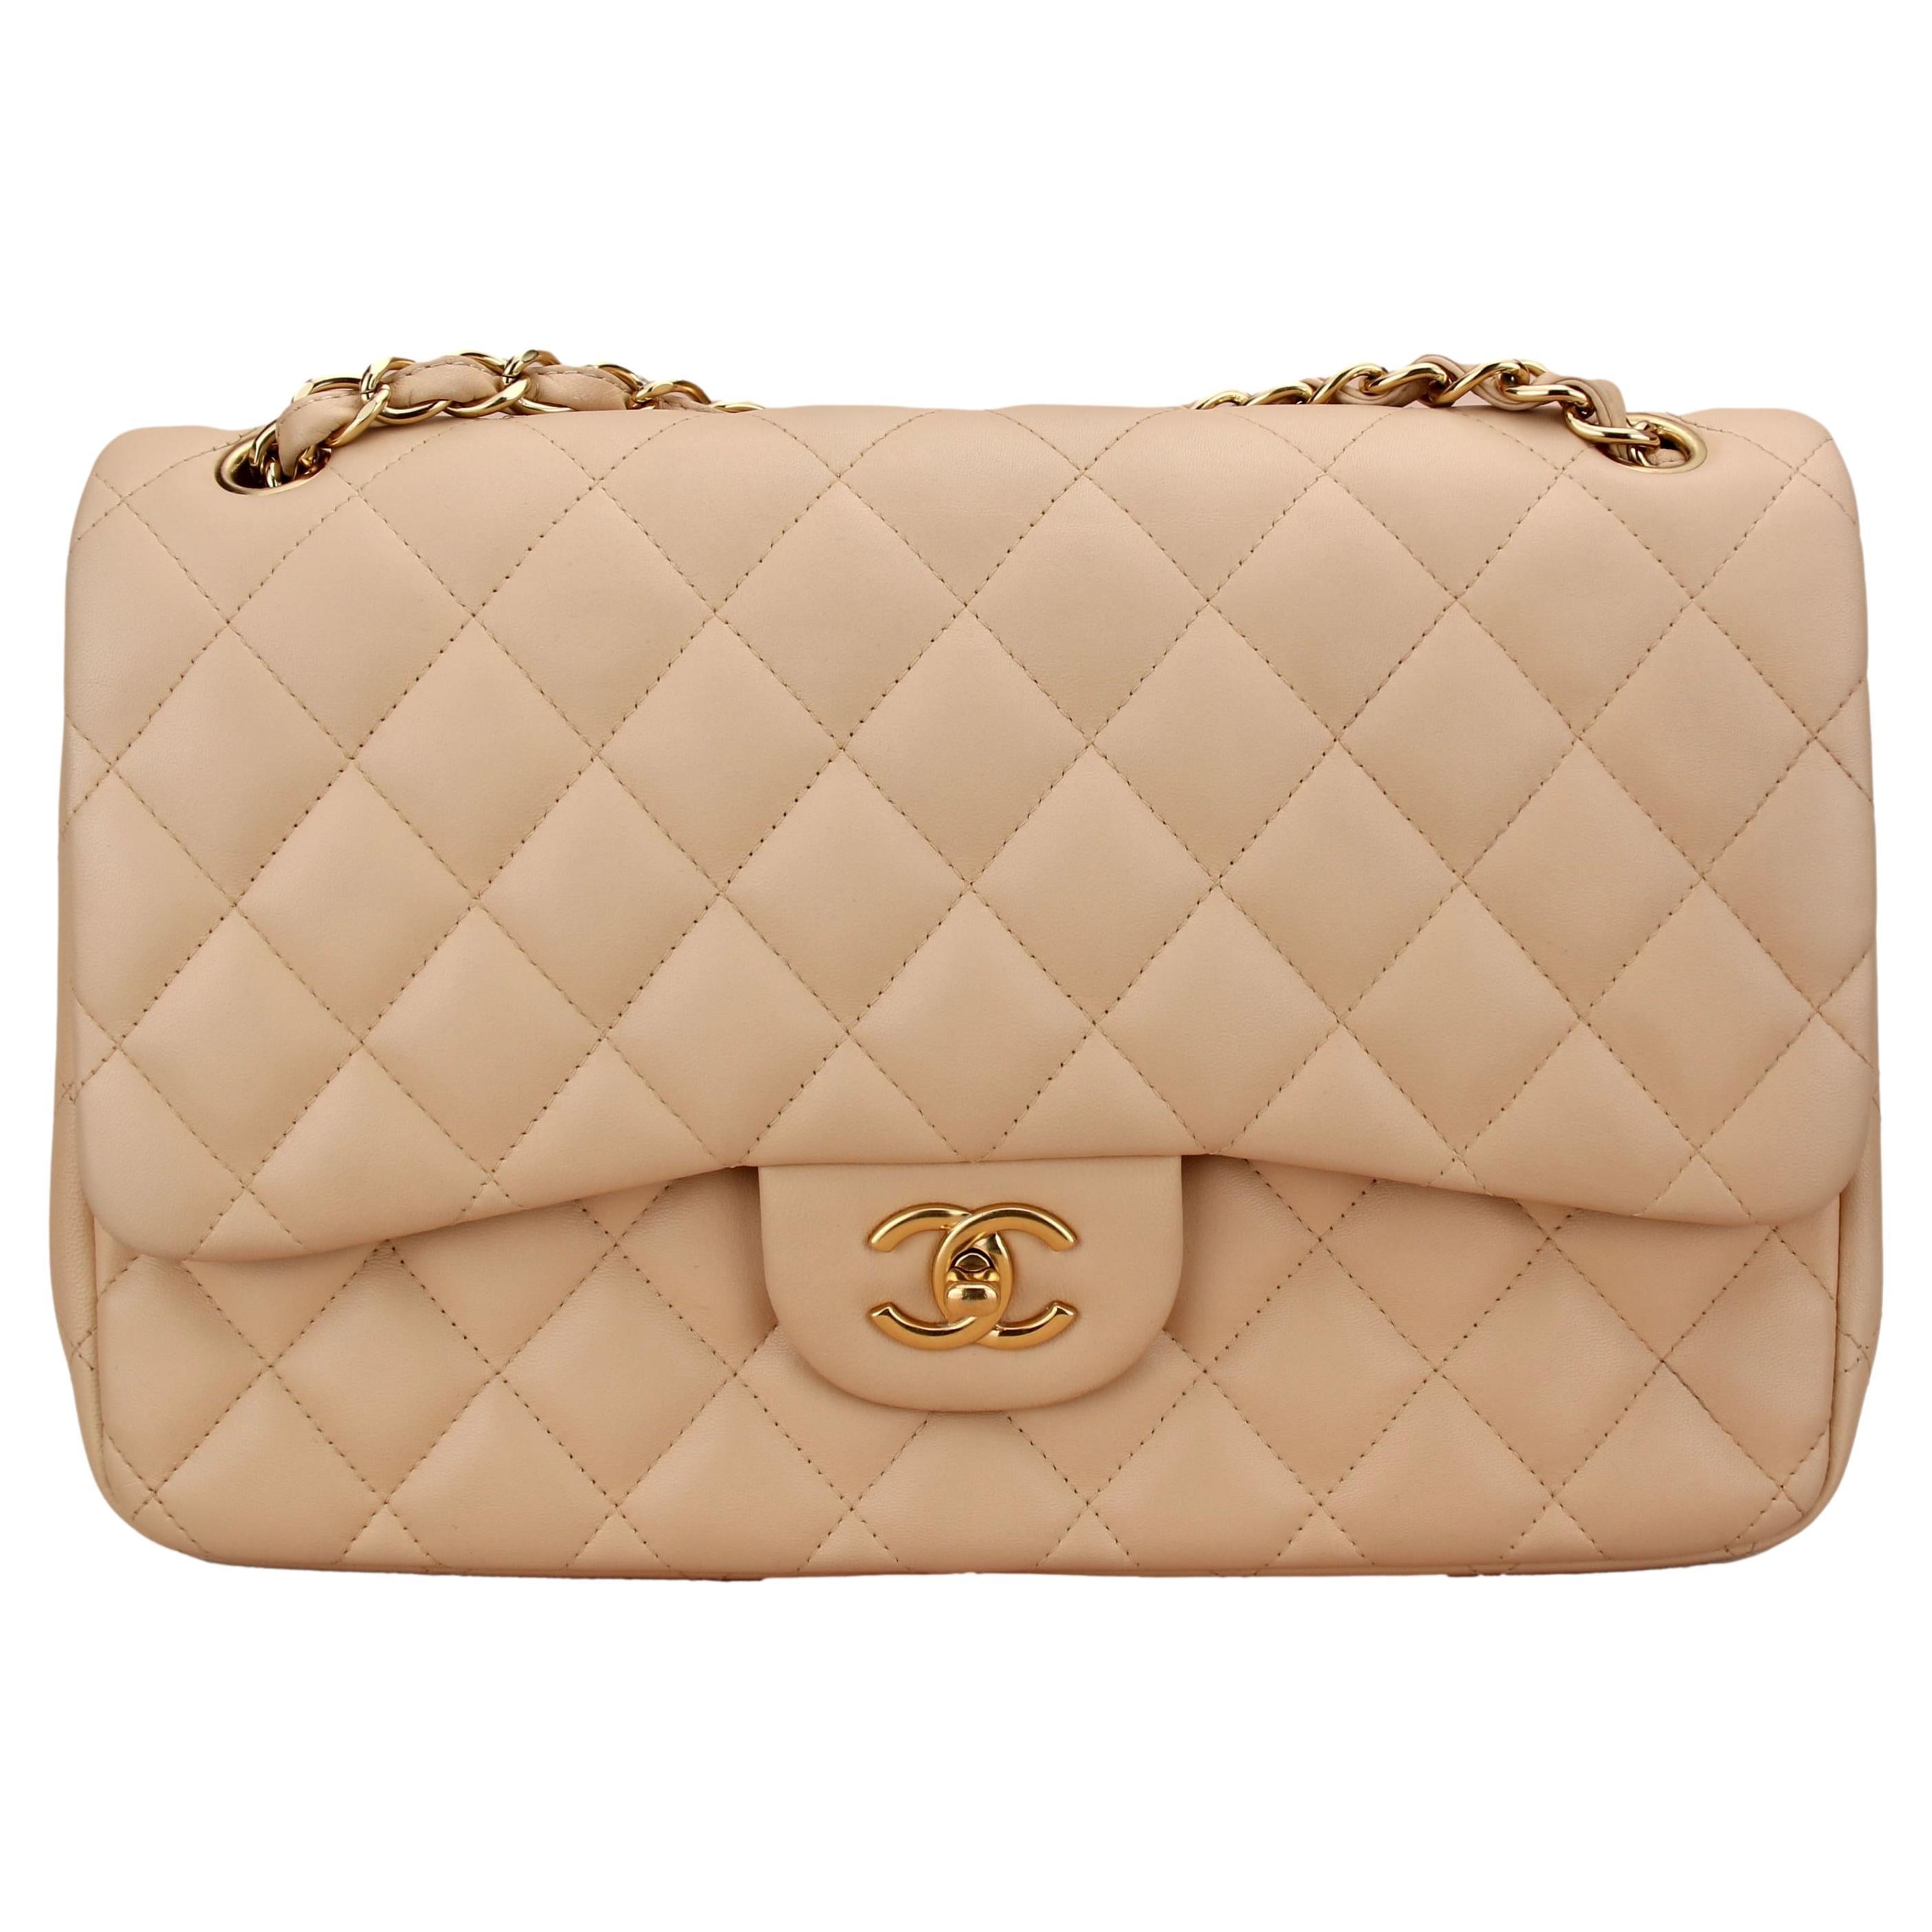 Chanel Beige Lambskin Leather Jumbo Classic Double Flap Bag